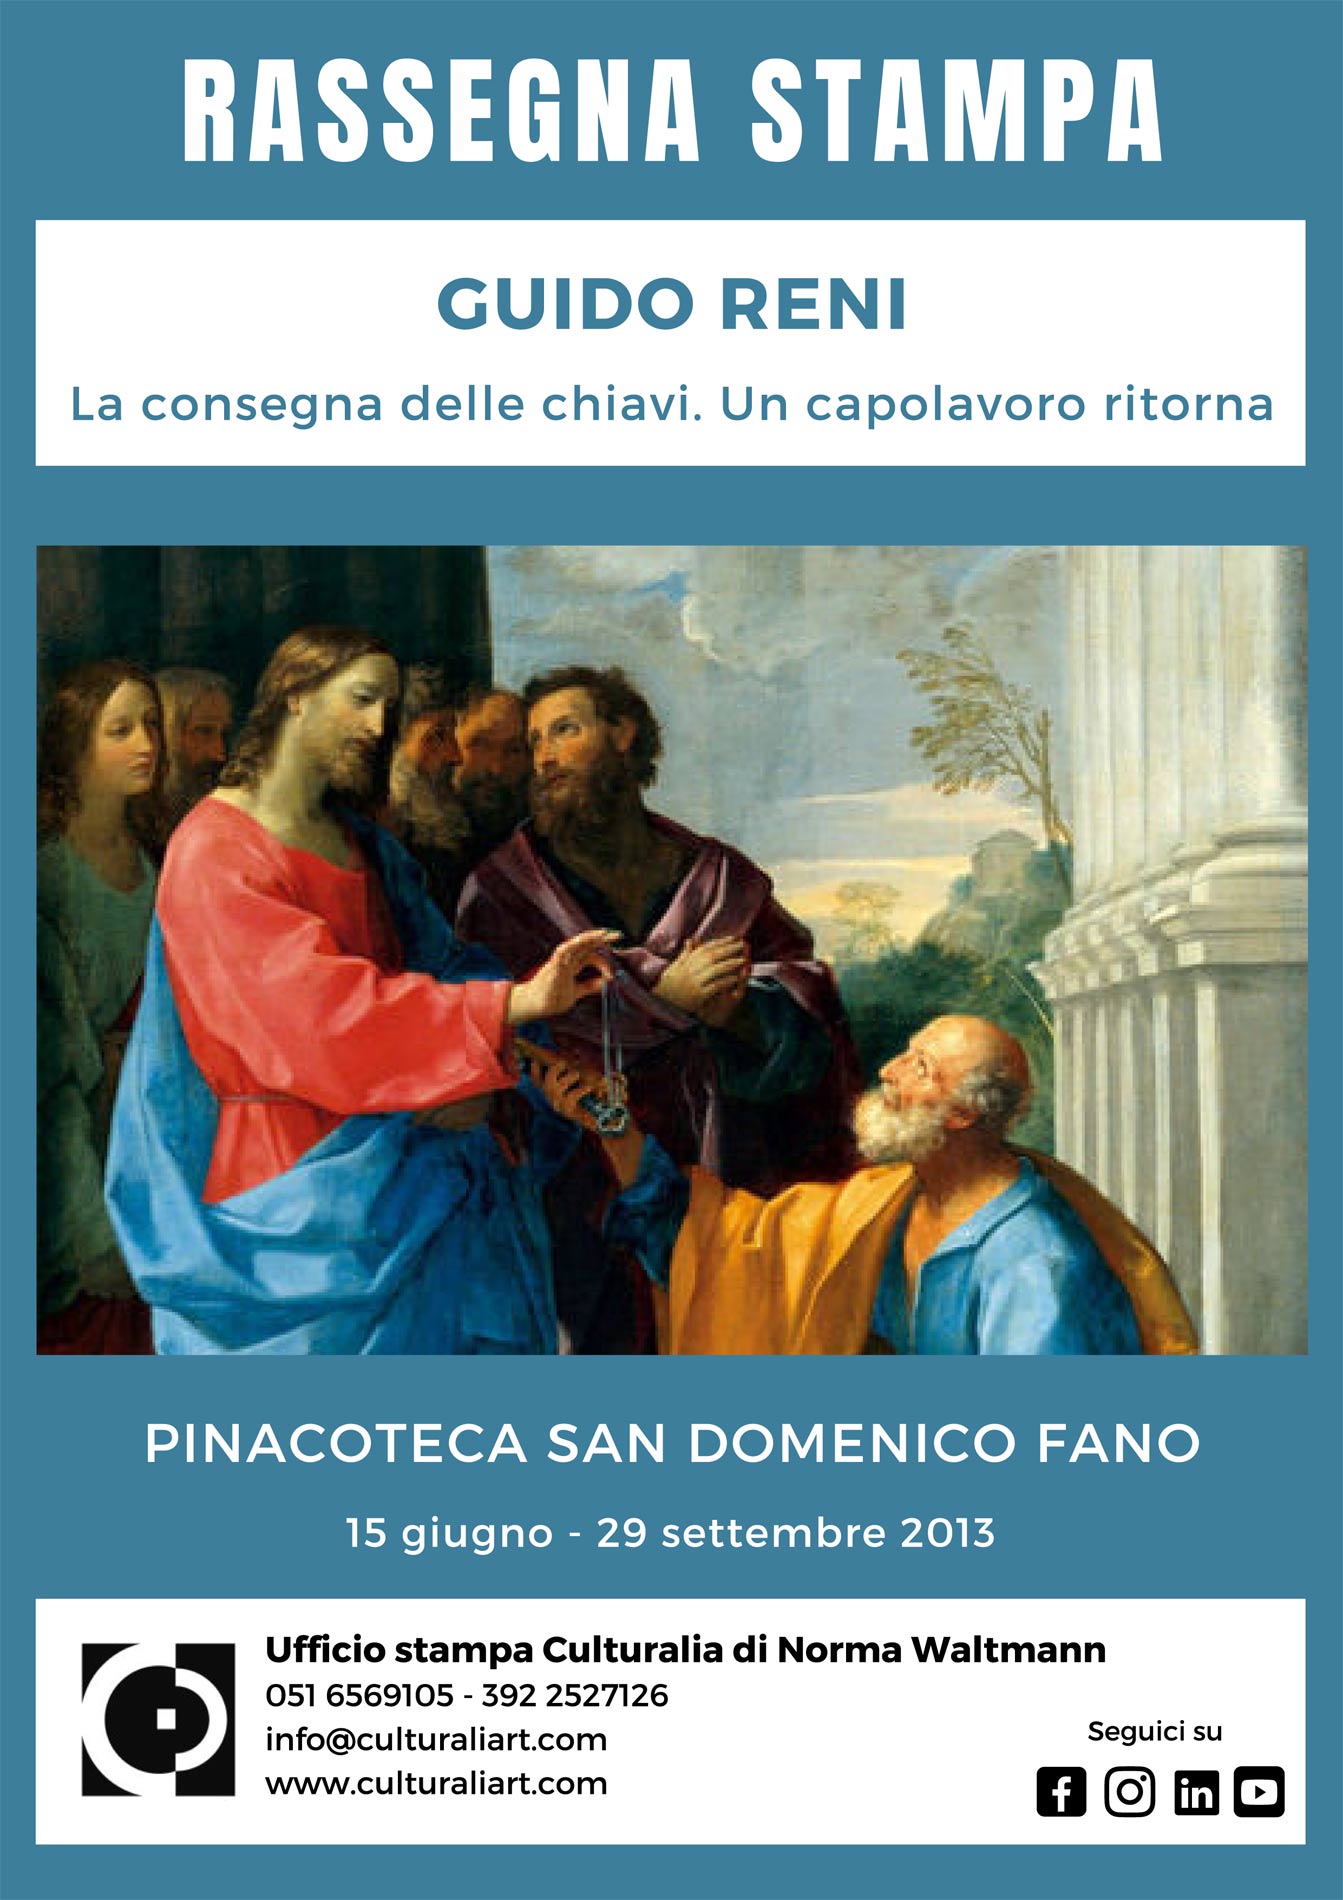 Rassegna stampa mostra “Guido Reni. La consegna delle chiavi. Un capolavoro ritorna”